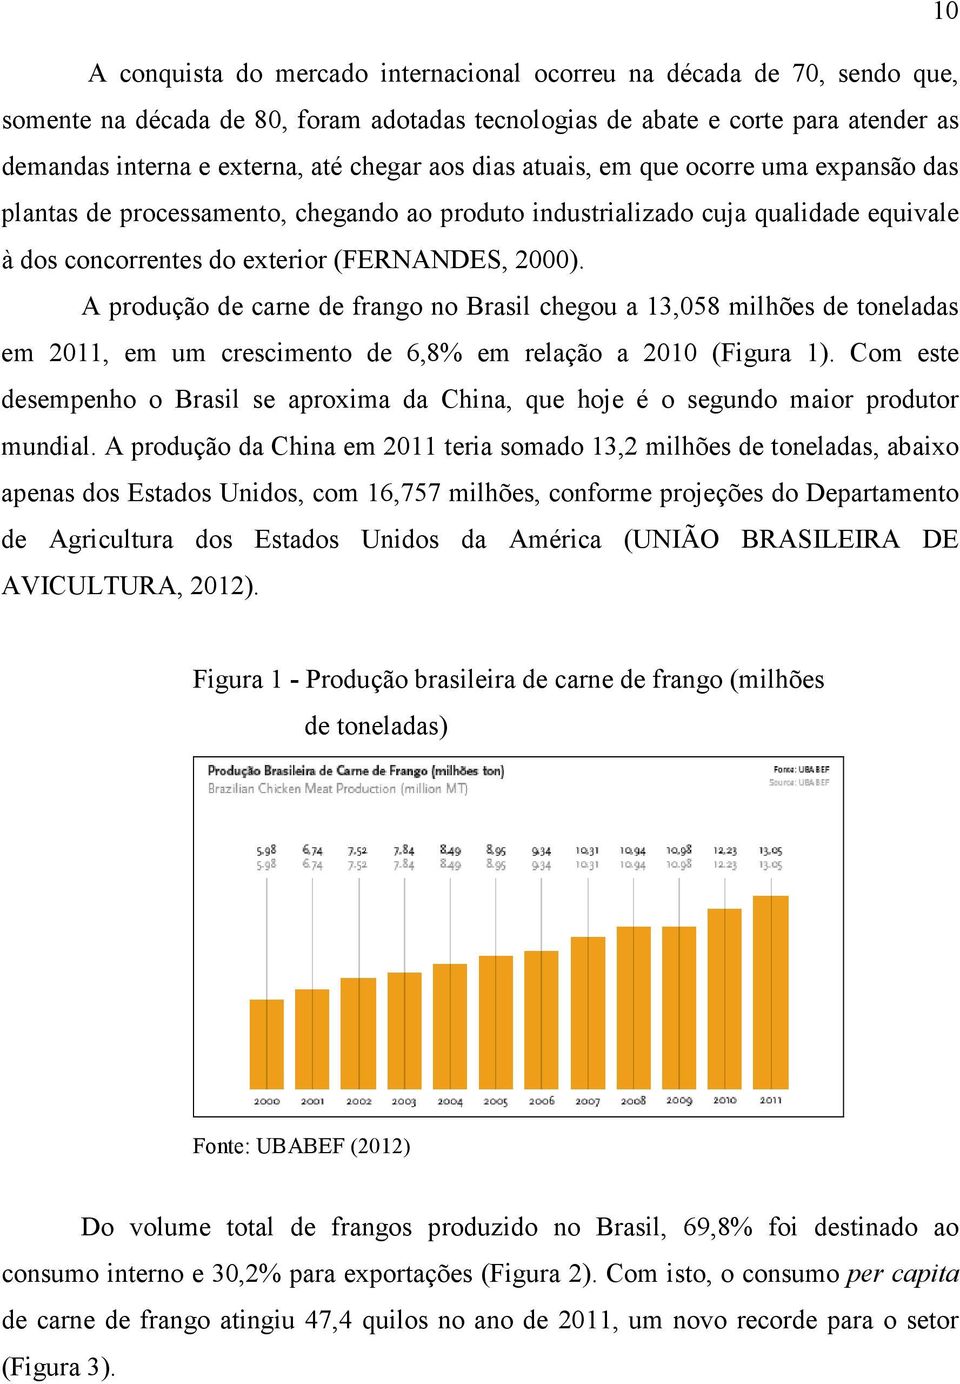 A produção de carne de frango no Brasil chegou a 13,058 milhões de toneladas em 2011, em um crescimento de 6,8% em relação a 2010 (Figura 1).